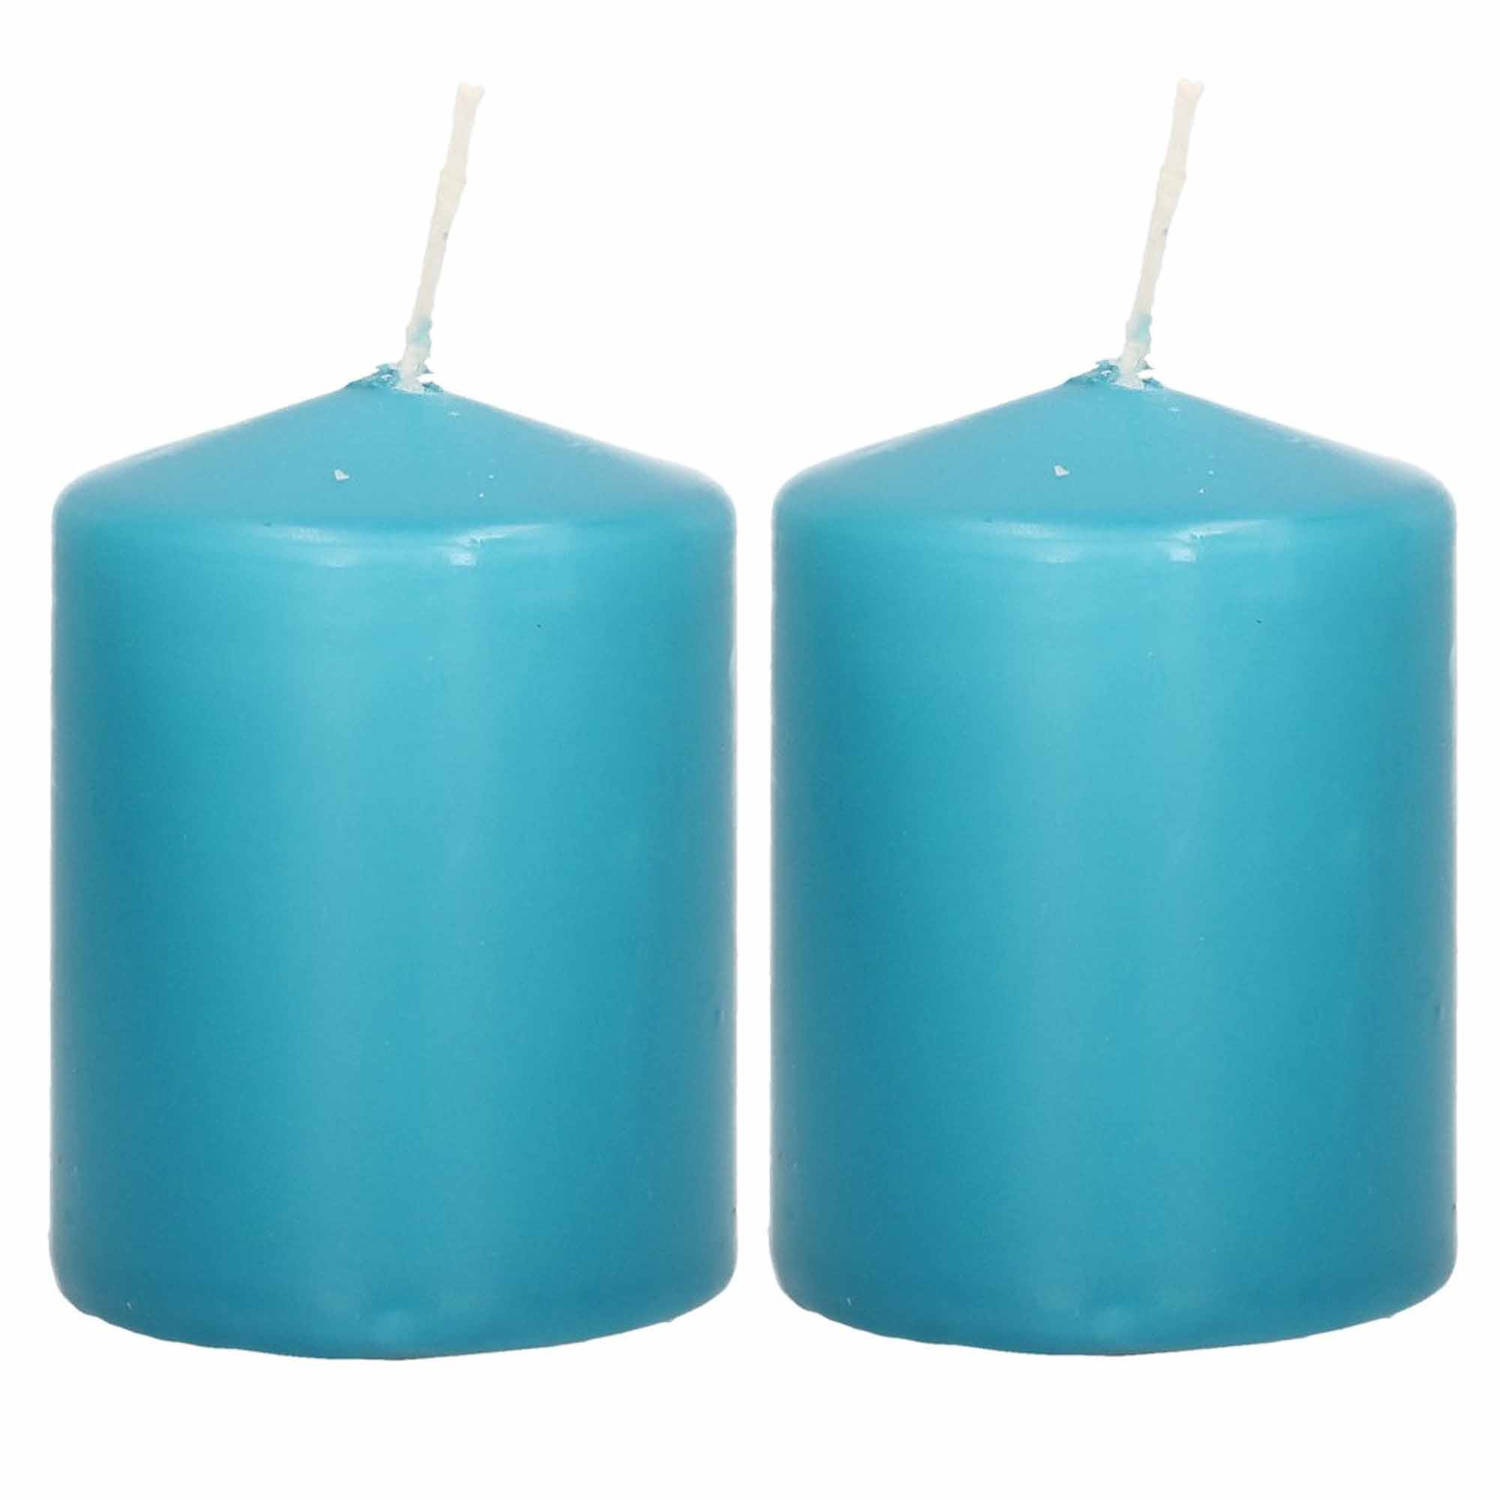 2x Turquoise Blauwe Cilinderkaarsen-stompkaarsen 6 X 8 Cm 29 Branduren Stompkaarsen